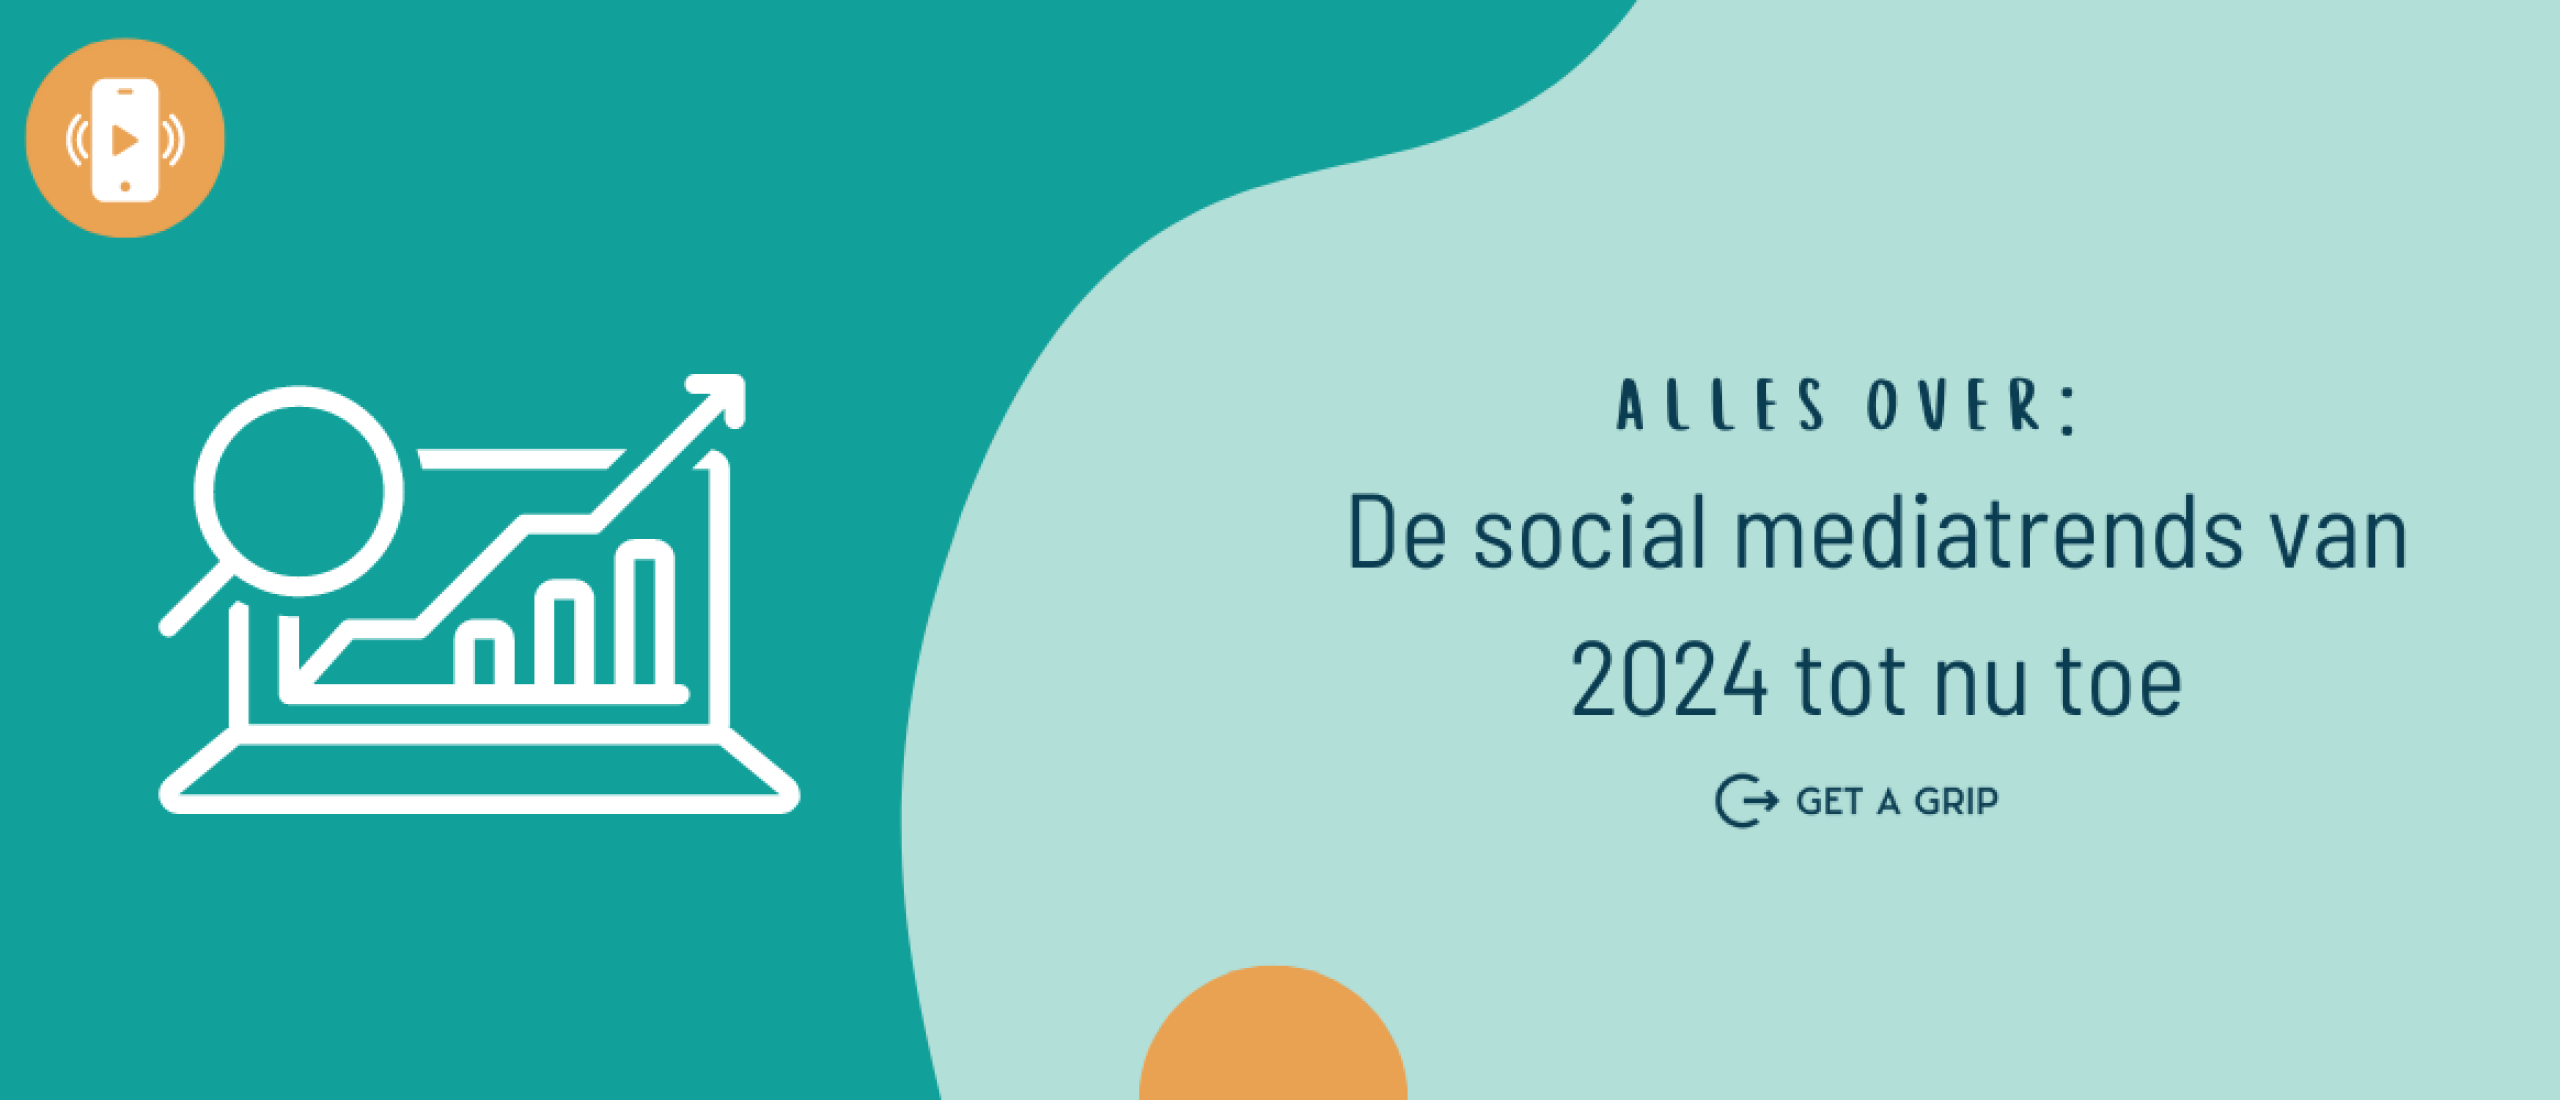 2024: De social mediatrends tot nu toe